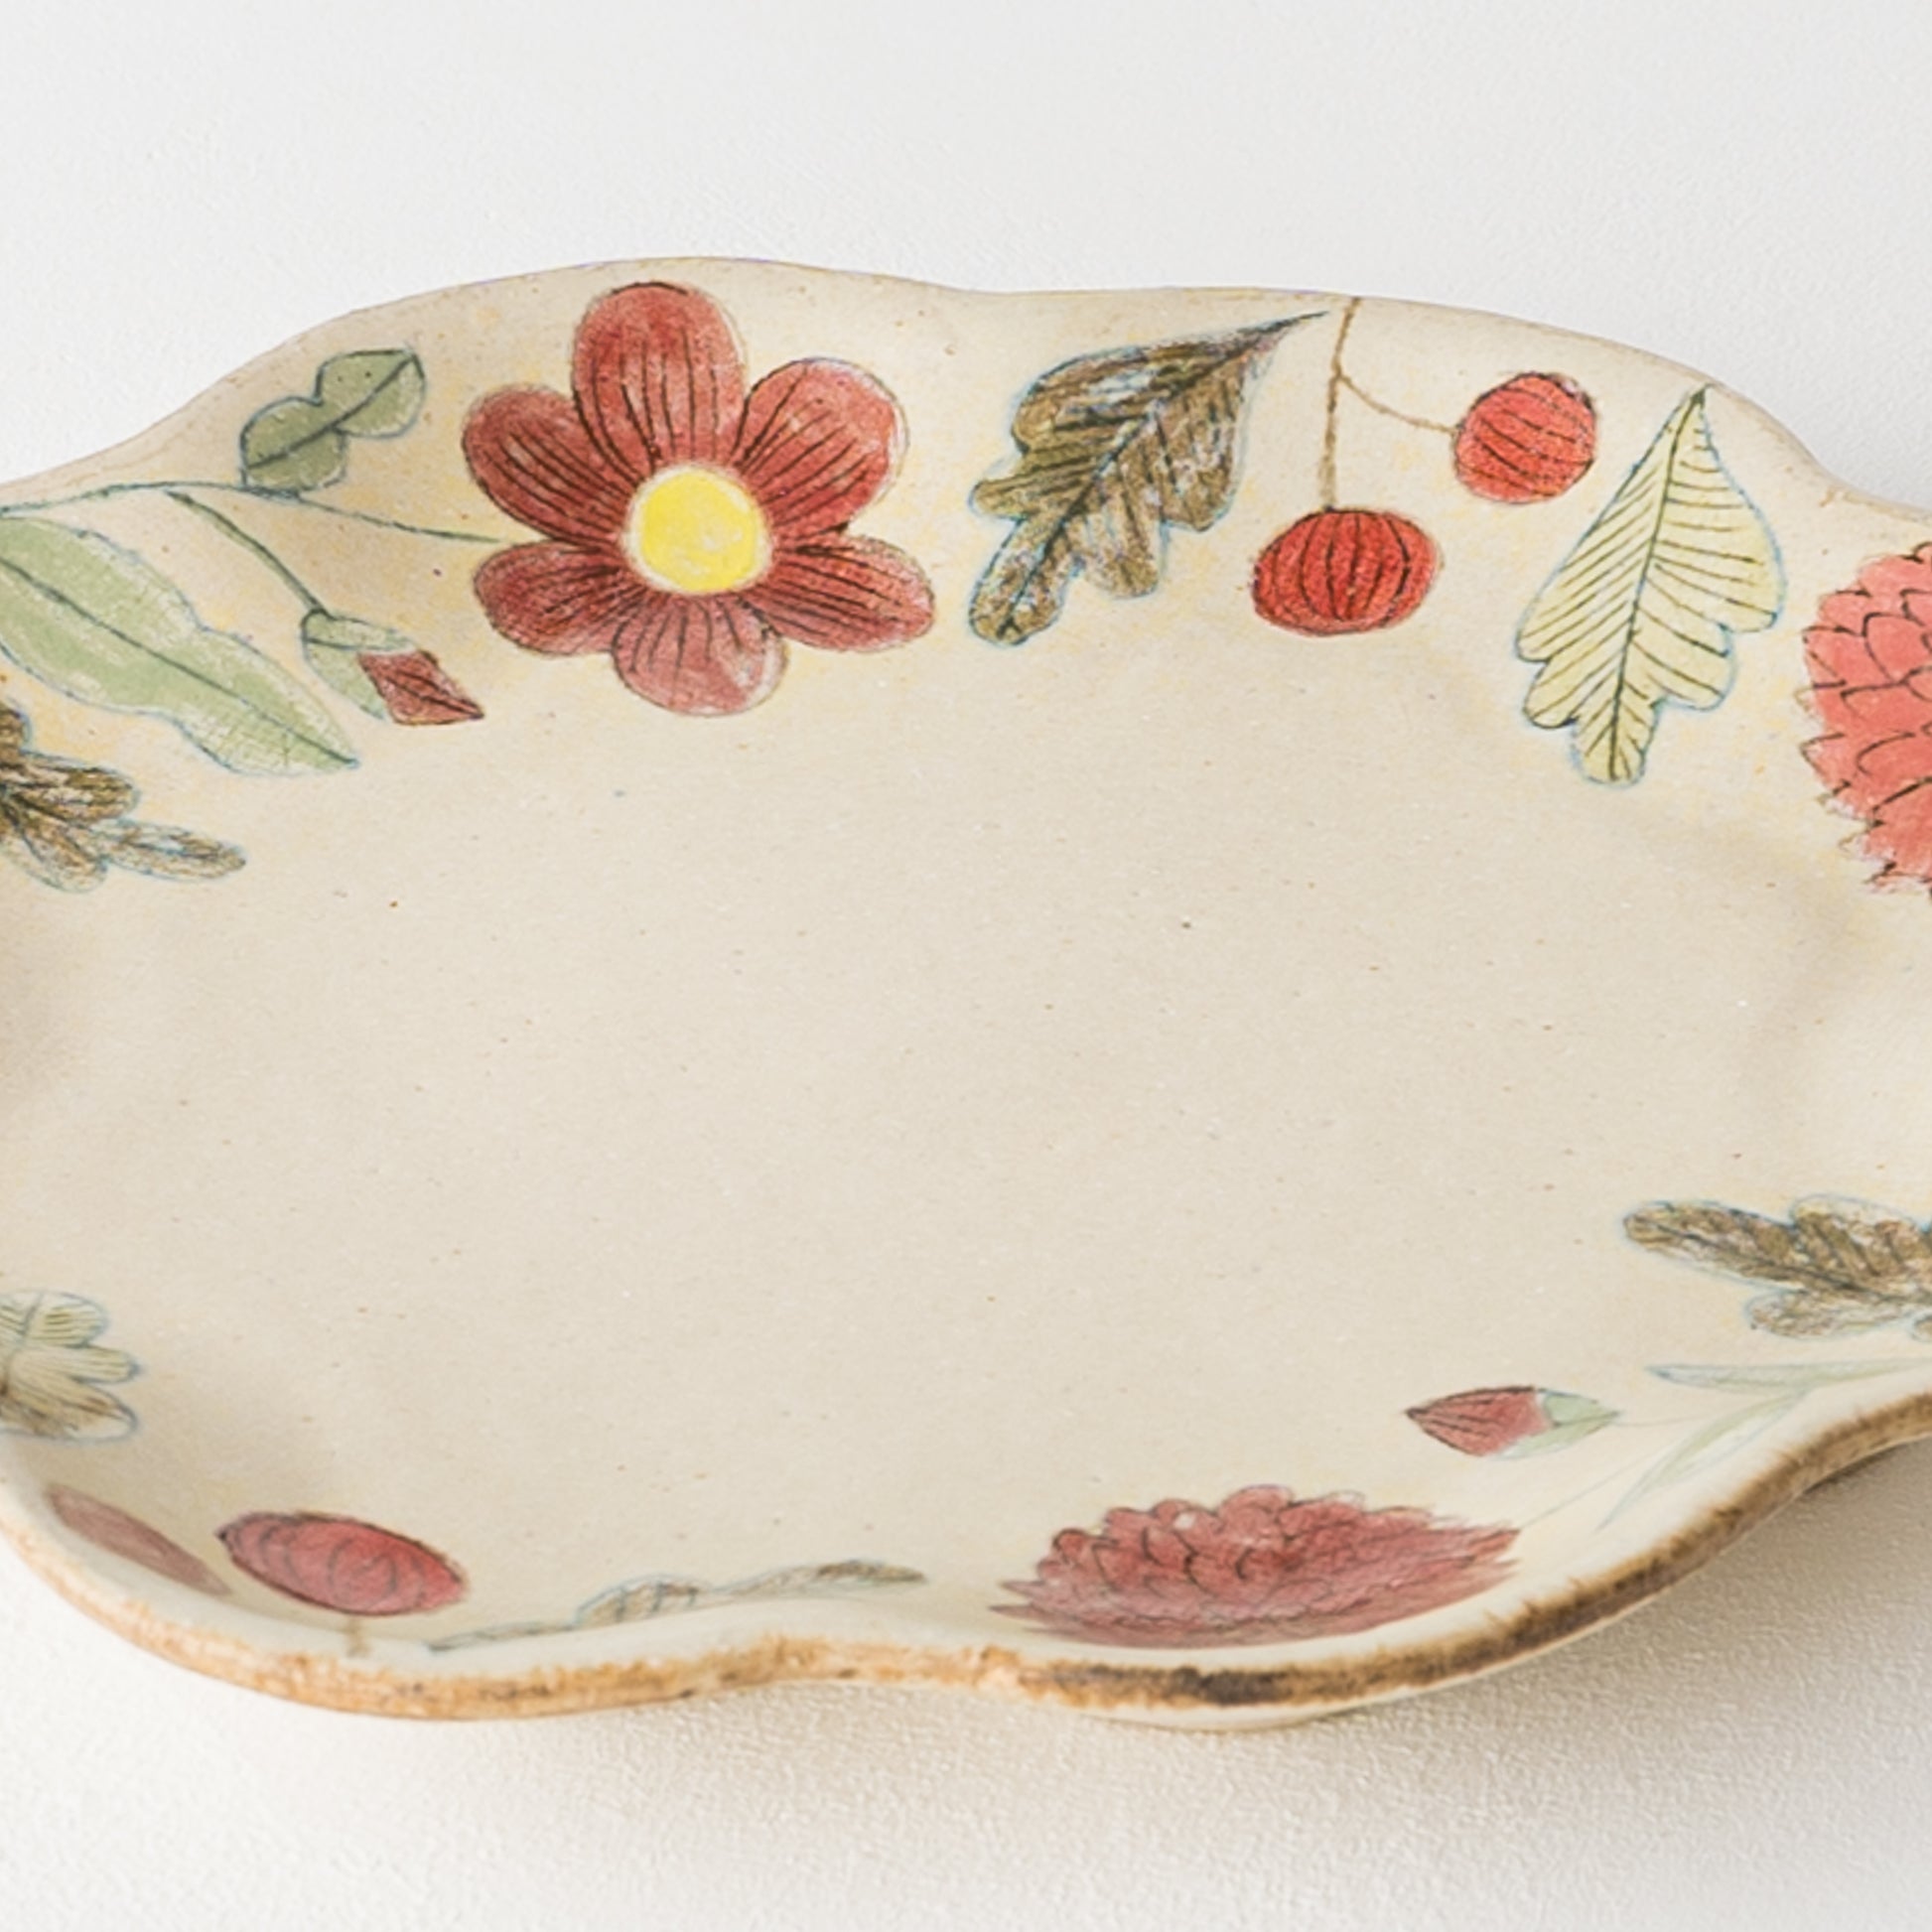 絵本のようなやさしい絵にほっこり癒される森野奈津子さんの花模様の花型皿